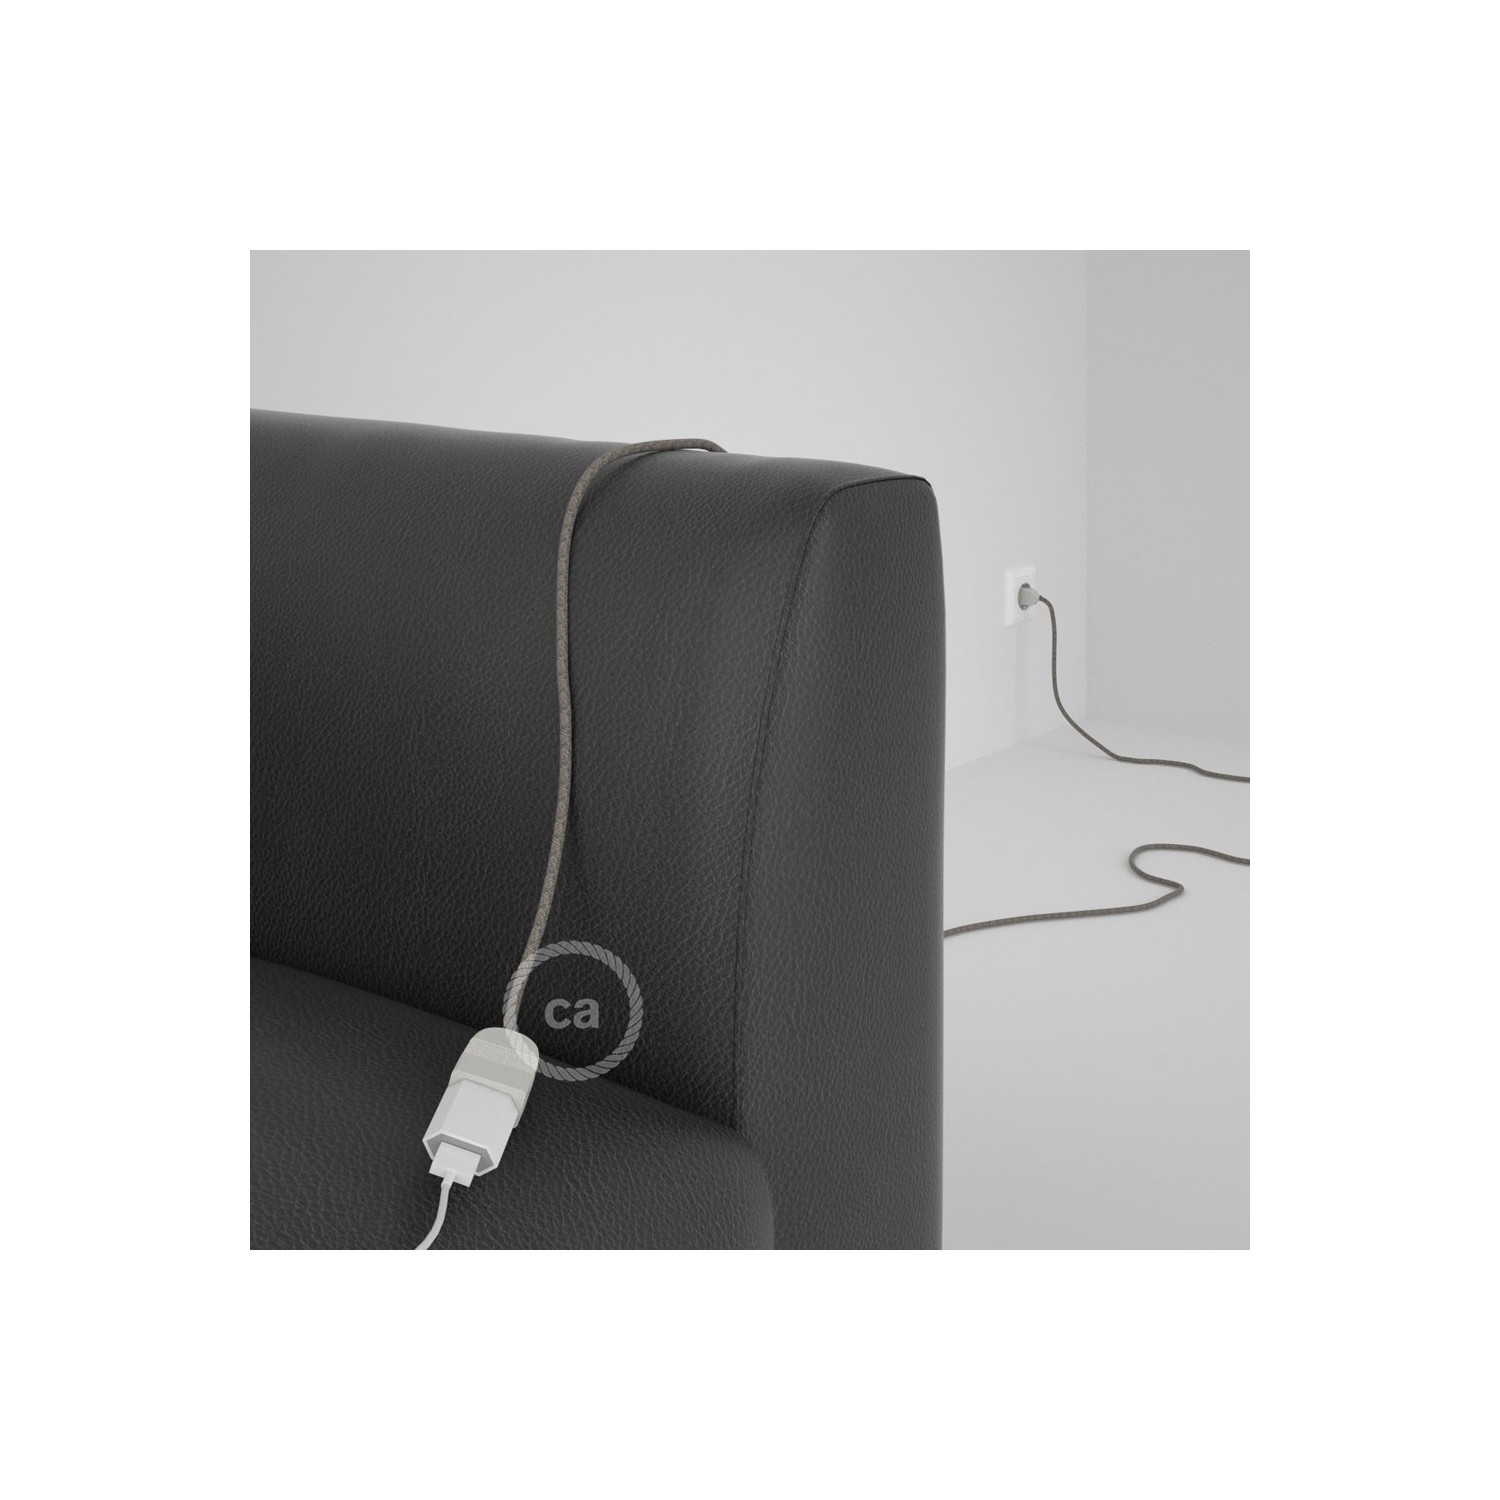 Rallonge électrique avec câble textile RD62 Coton et Lin Naturel Losange Vert Thym 2P 10A Made in Italy.